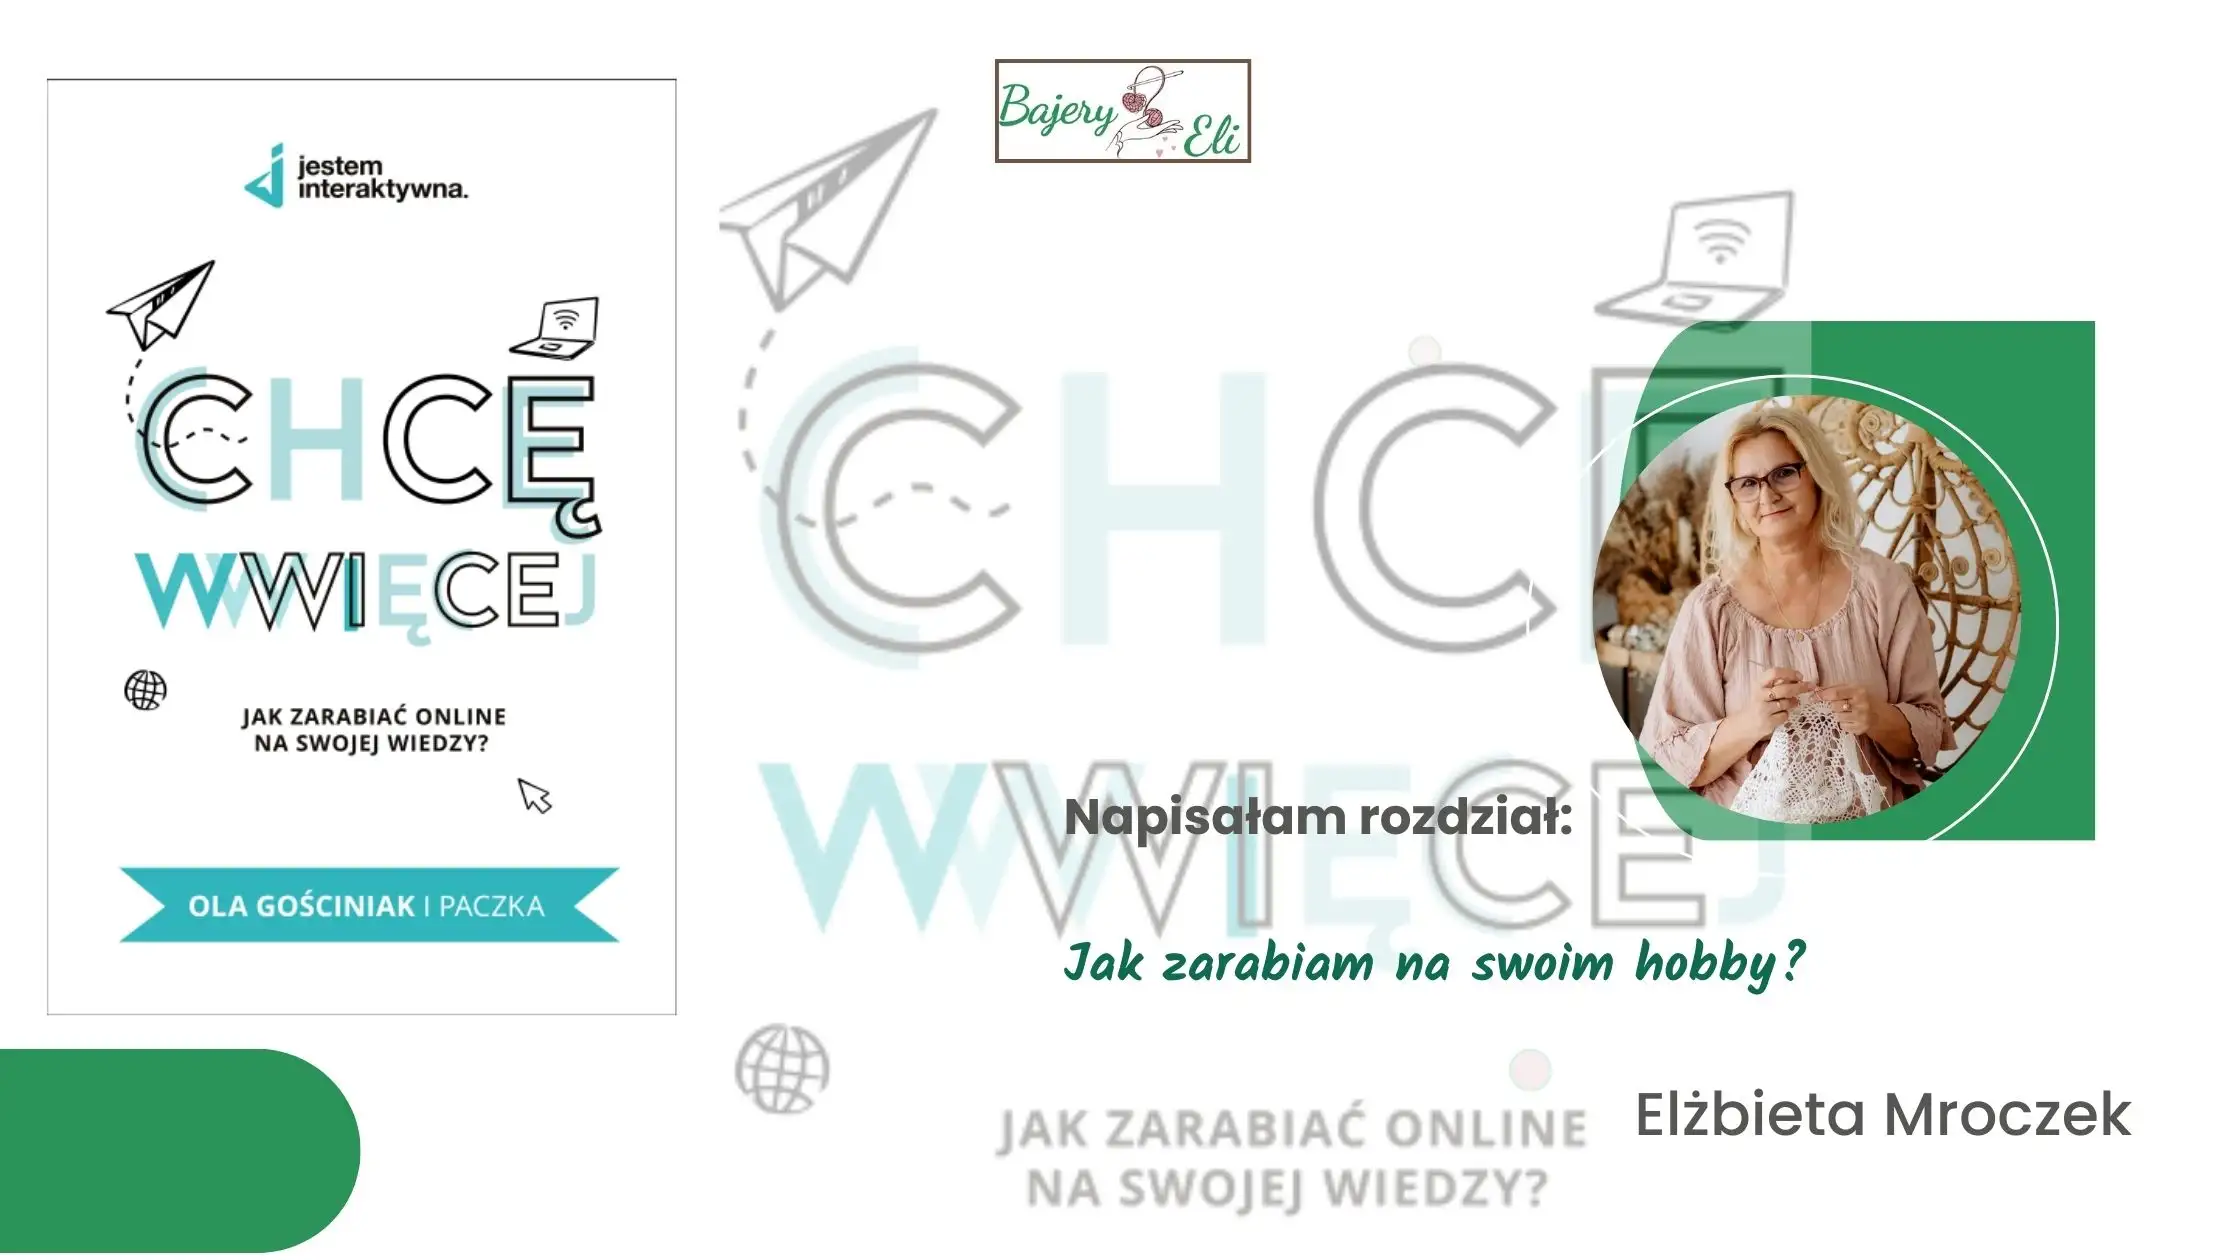 Okładka książki "Chcę WWWięcej" i autorka rozdziału Elżbieta Mroczek- Kluczowe kroki w budowaniu biznesu-